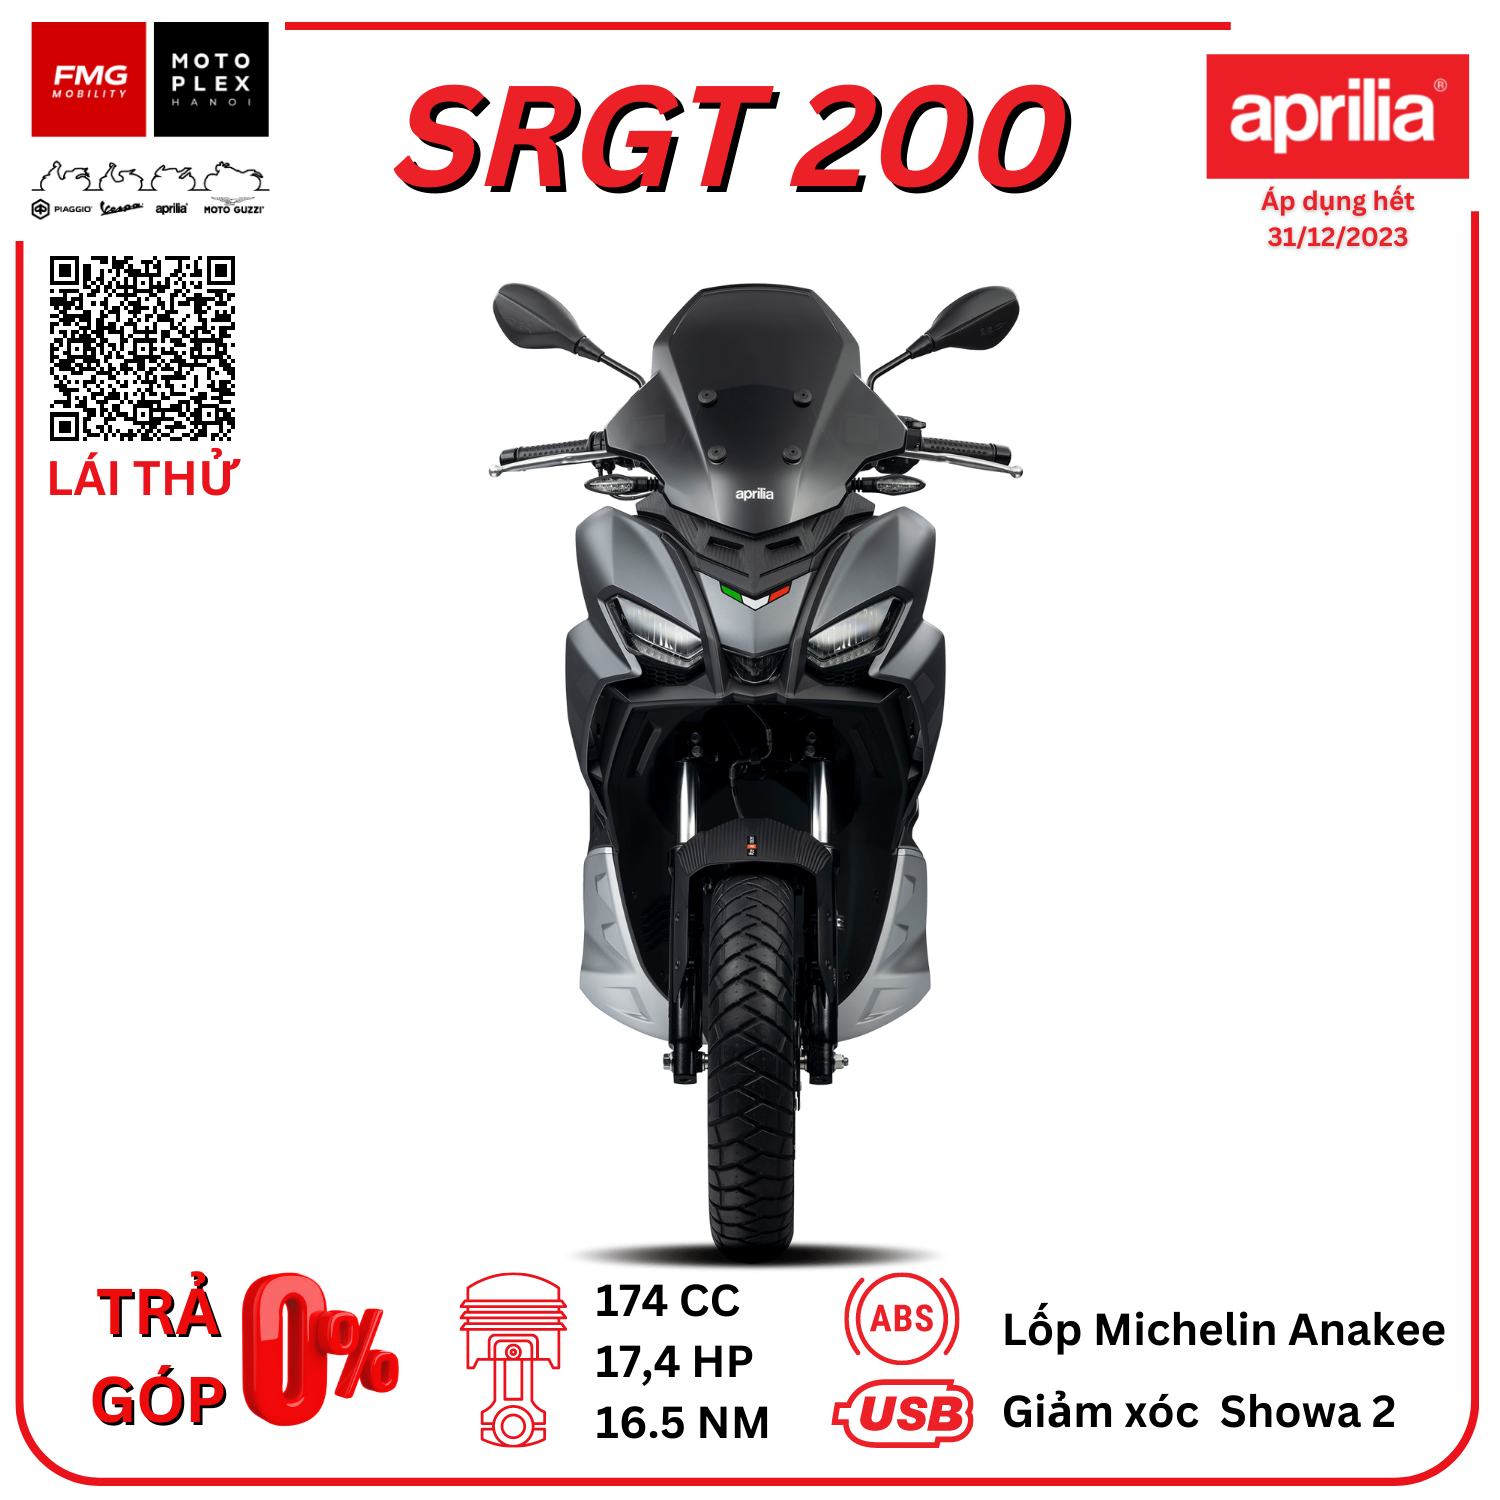 Aprilia SRGT 200 - Xe ga đa địa hình 174cc | Thương hiệu Aprilia của Ý thuộc tập đoàn Piaggio Việt Nam